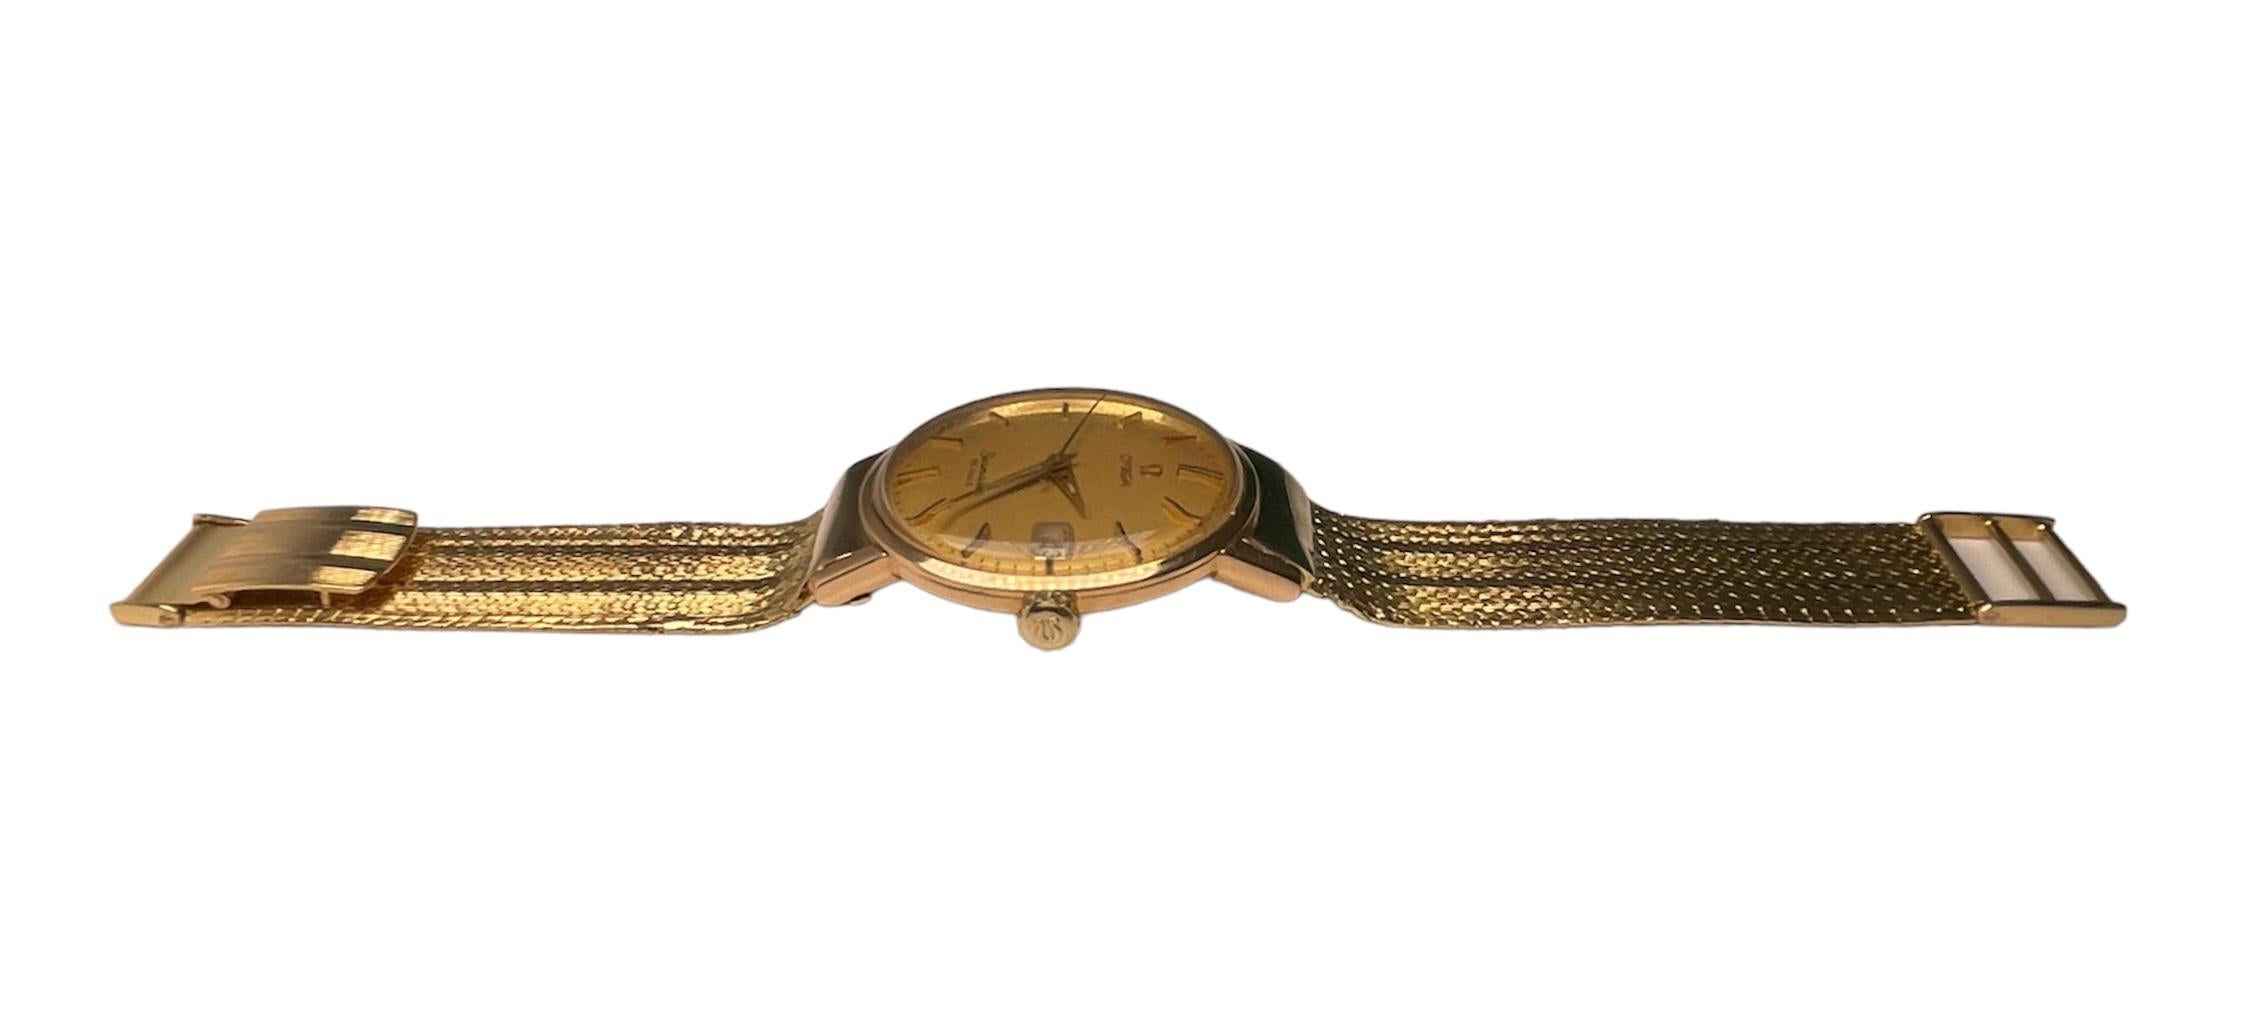 omega 18k gold watch vintage